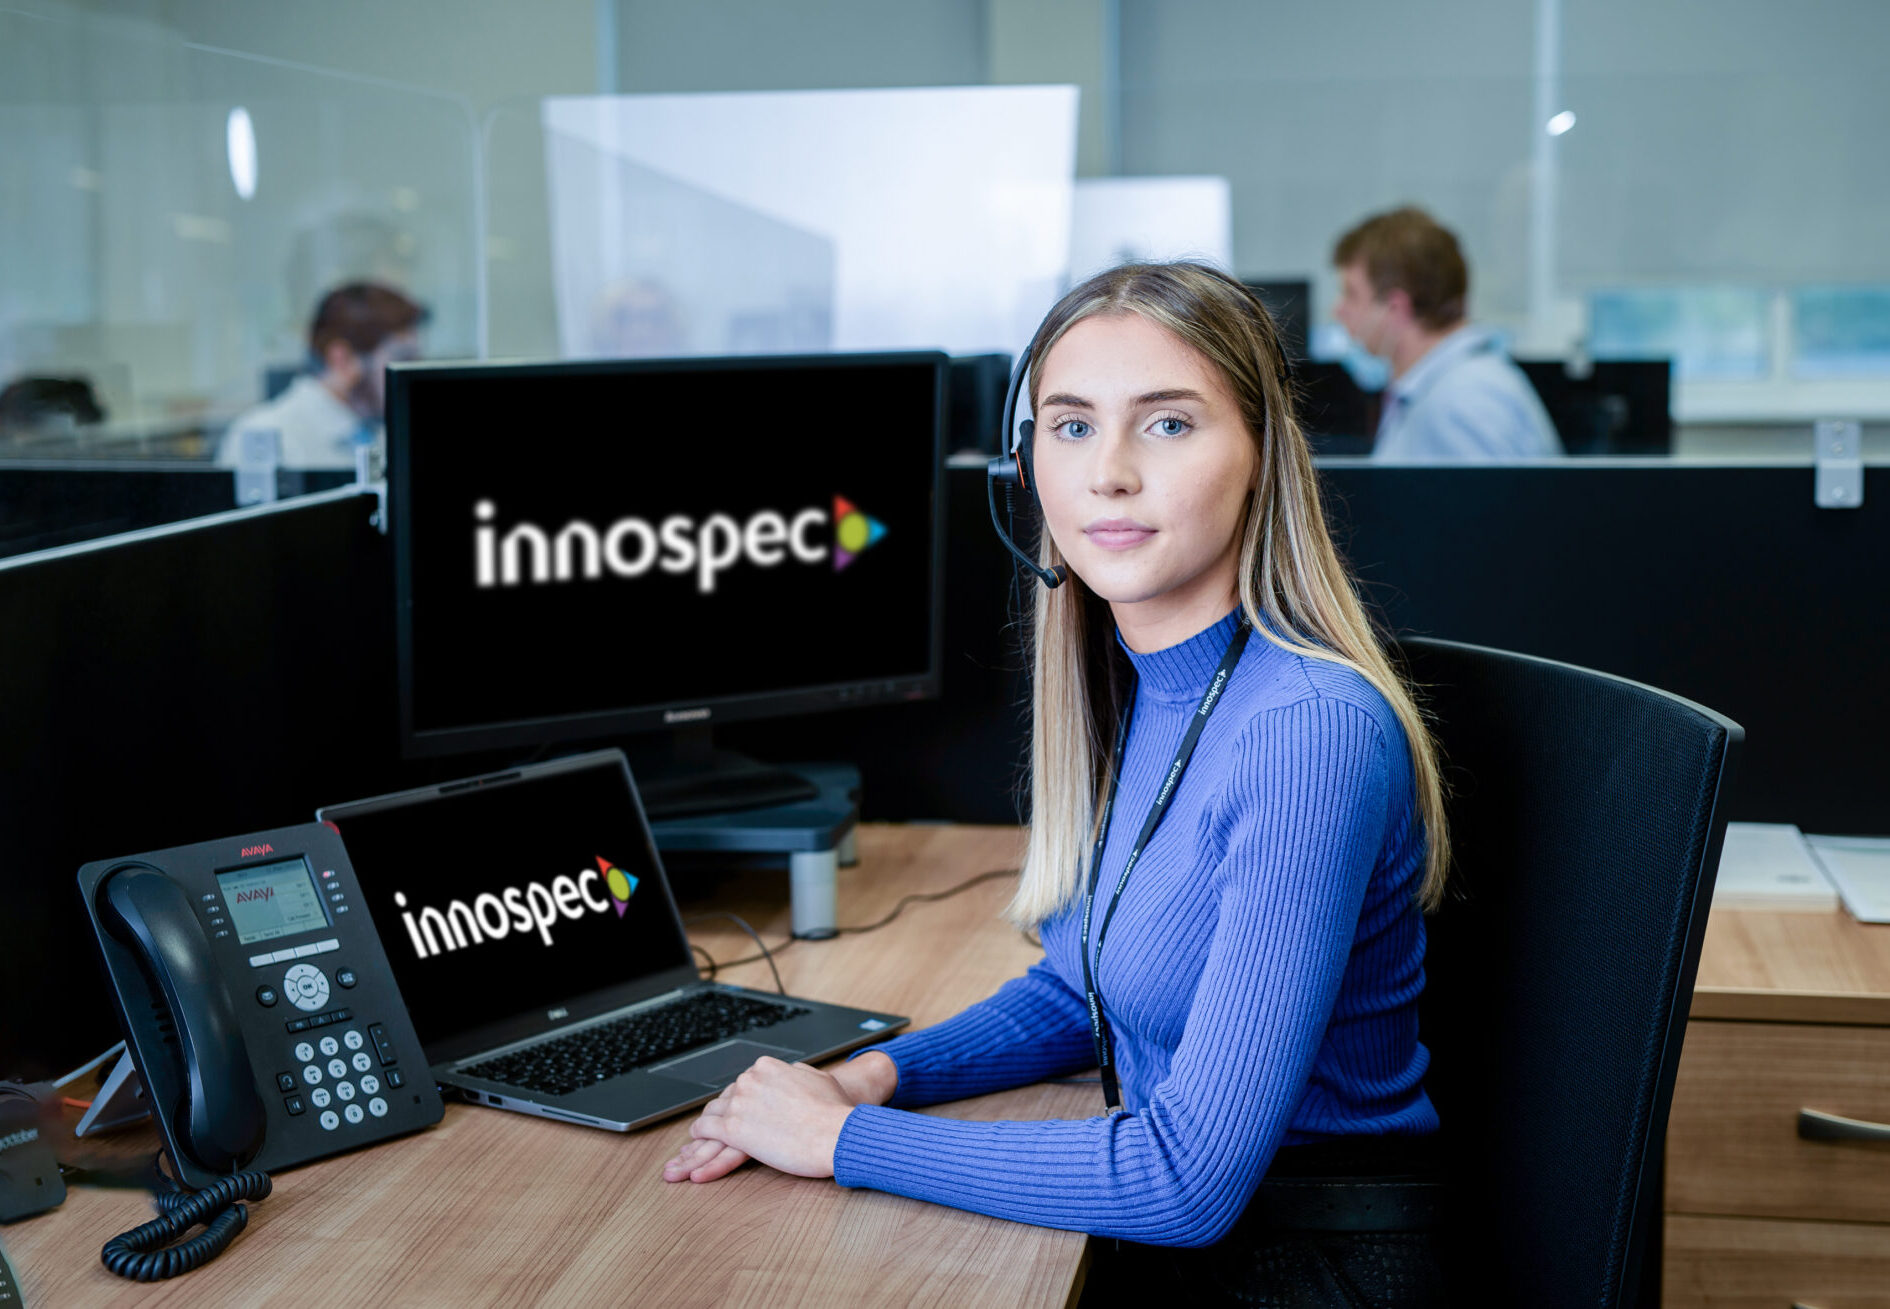 An Innospec employee